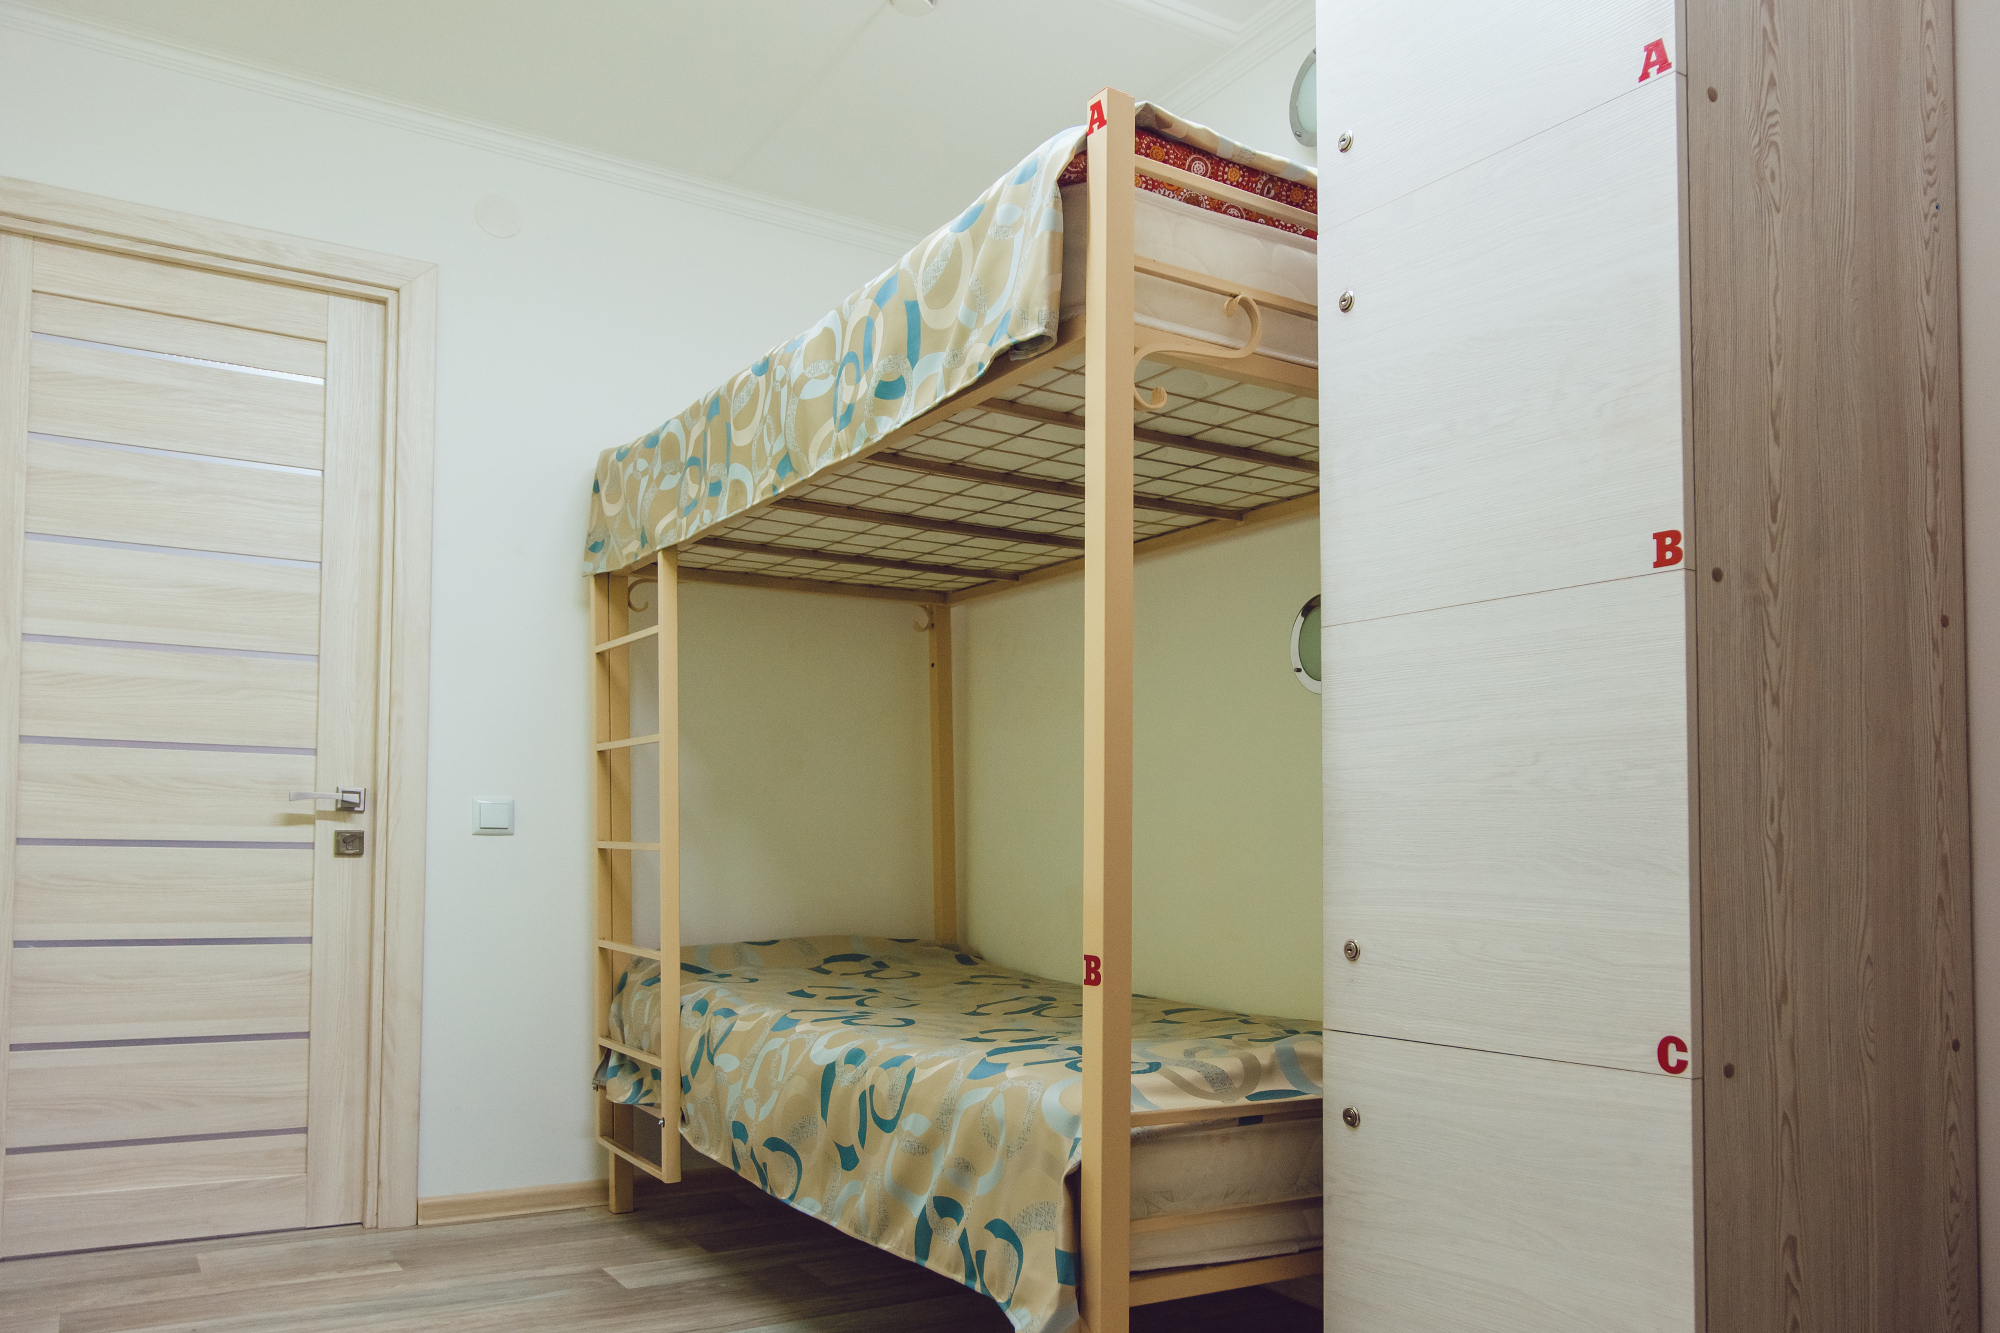 Hostel Bovec mi je nudil kvalitetno prenočišče v Bovcu